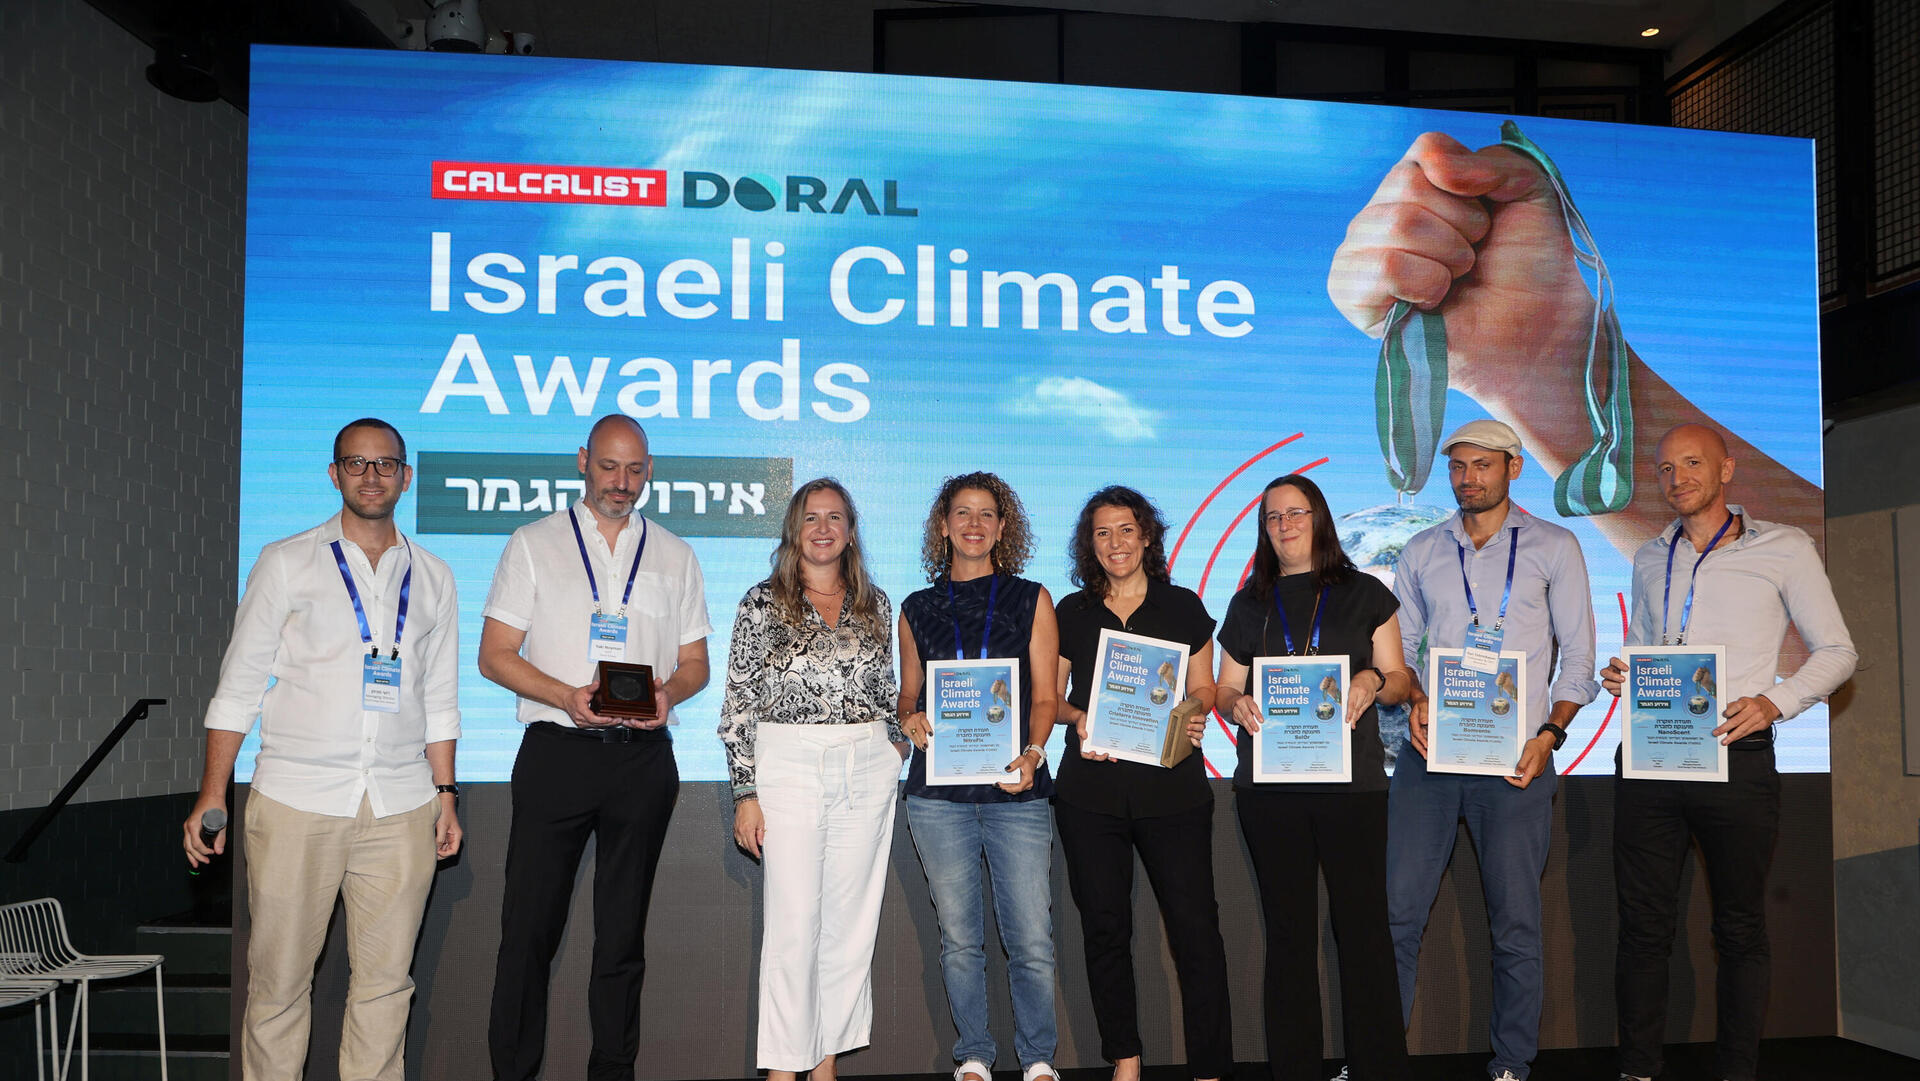 כנס Israel Climate Awards  כרזה על המיזם הזוכה בתחרות: צילום חמישיית הגמר , צילום הזוכה במקום הראשון וחלוקת המדליה